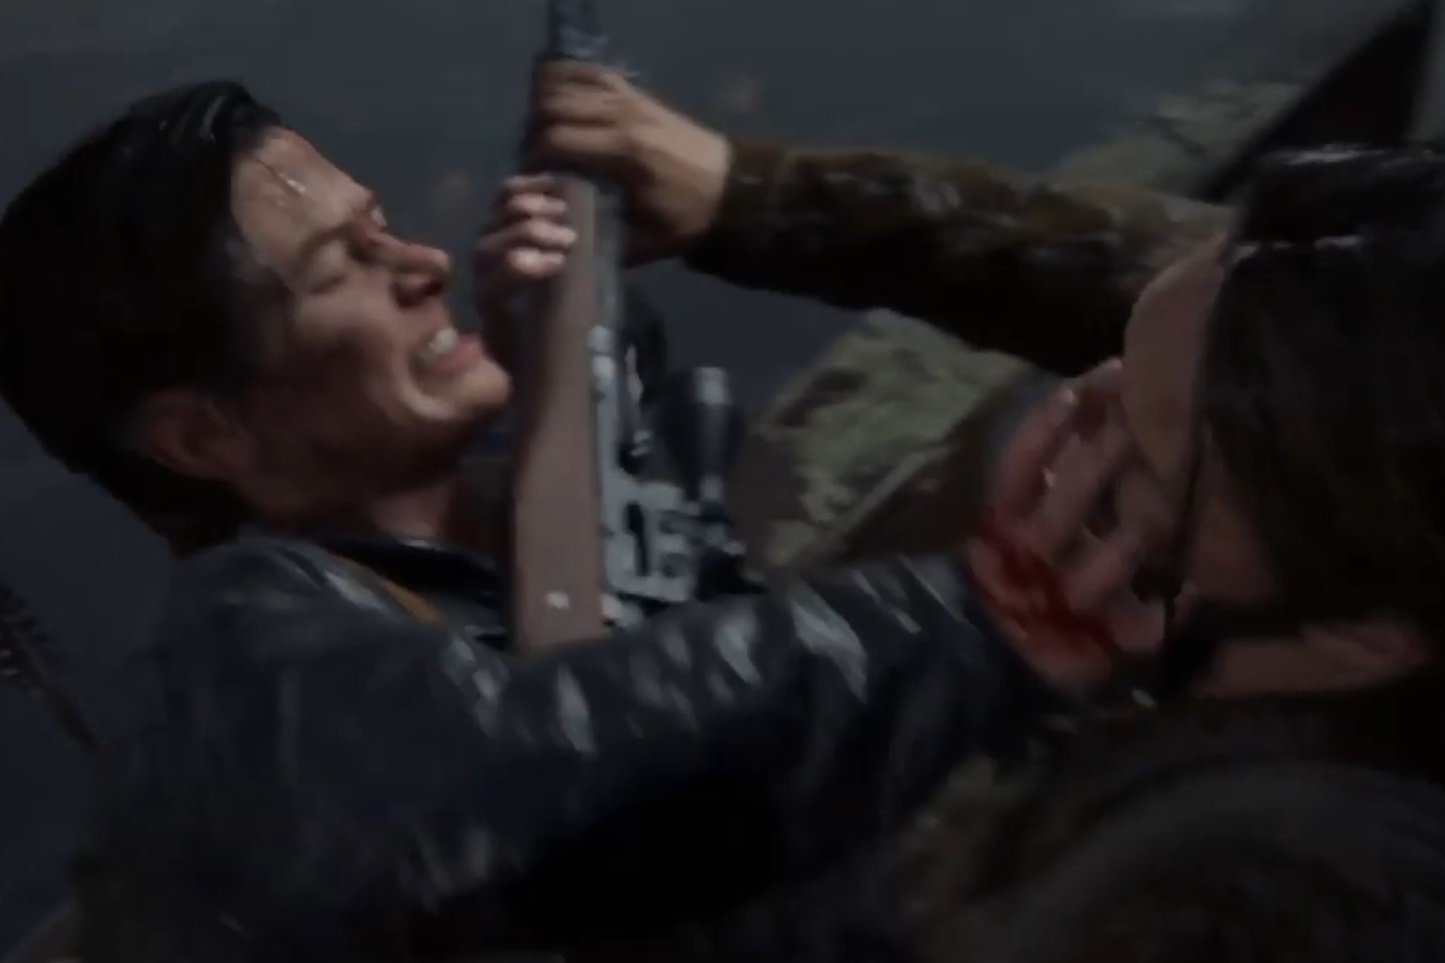 The Last of Us 2: jogador descobre que Abby pode matar Tommy